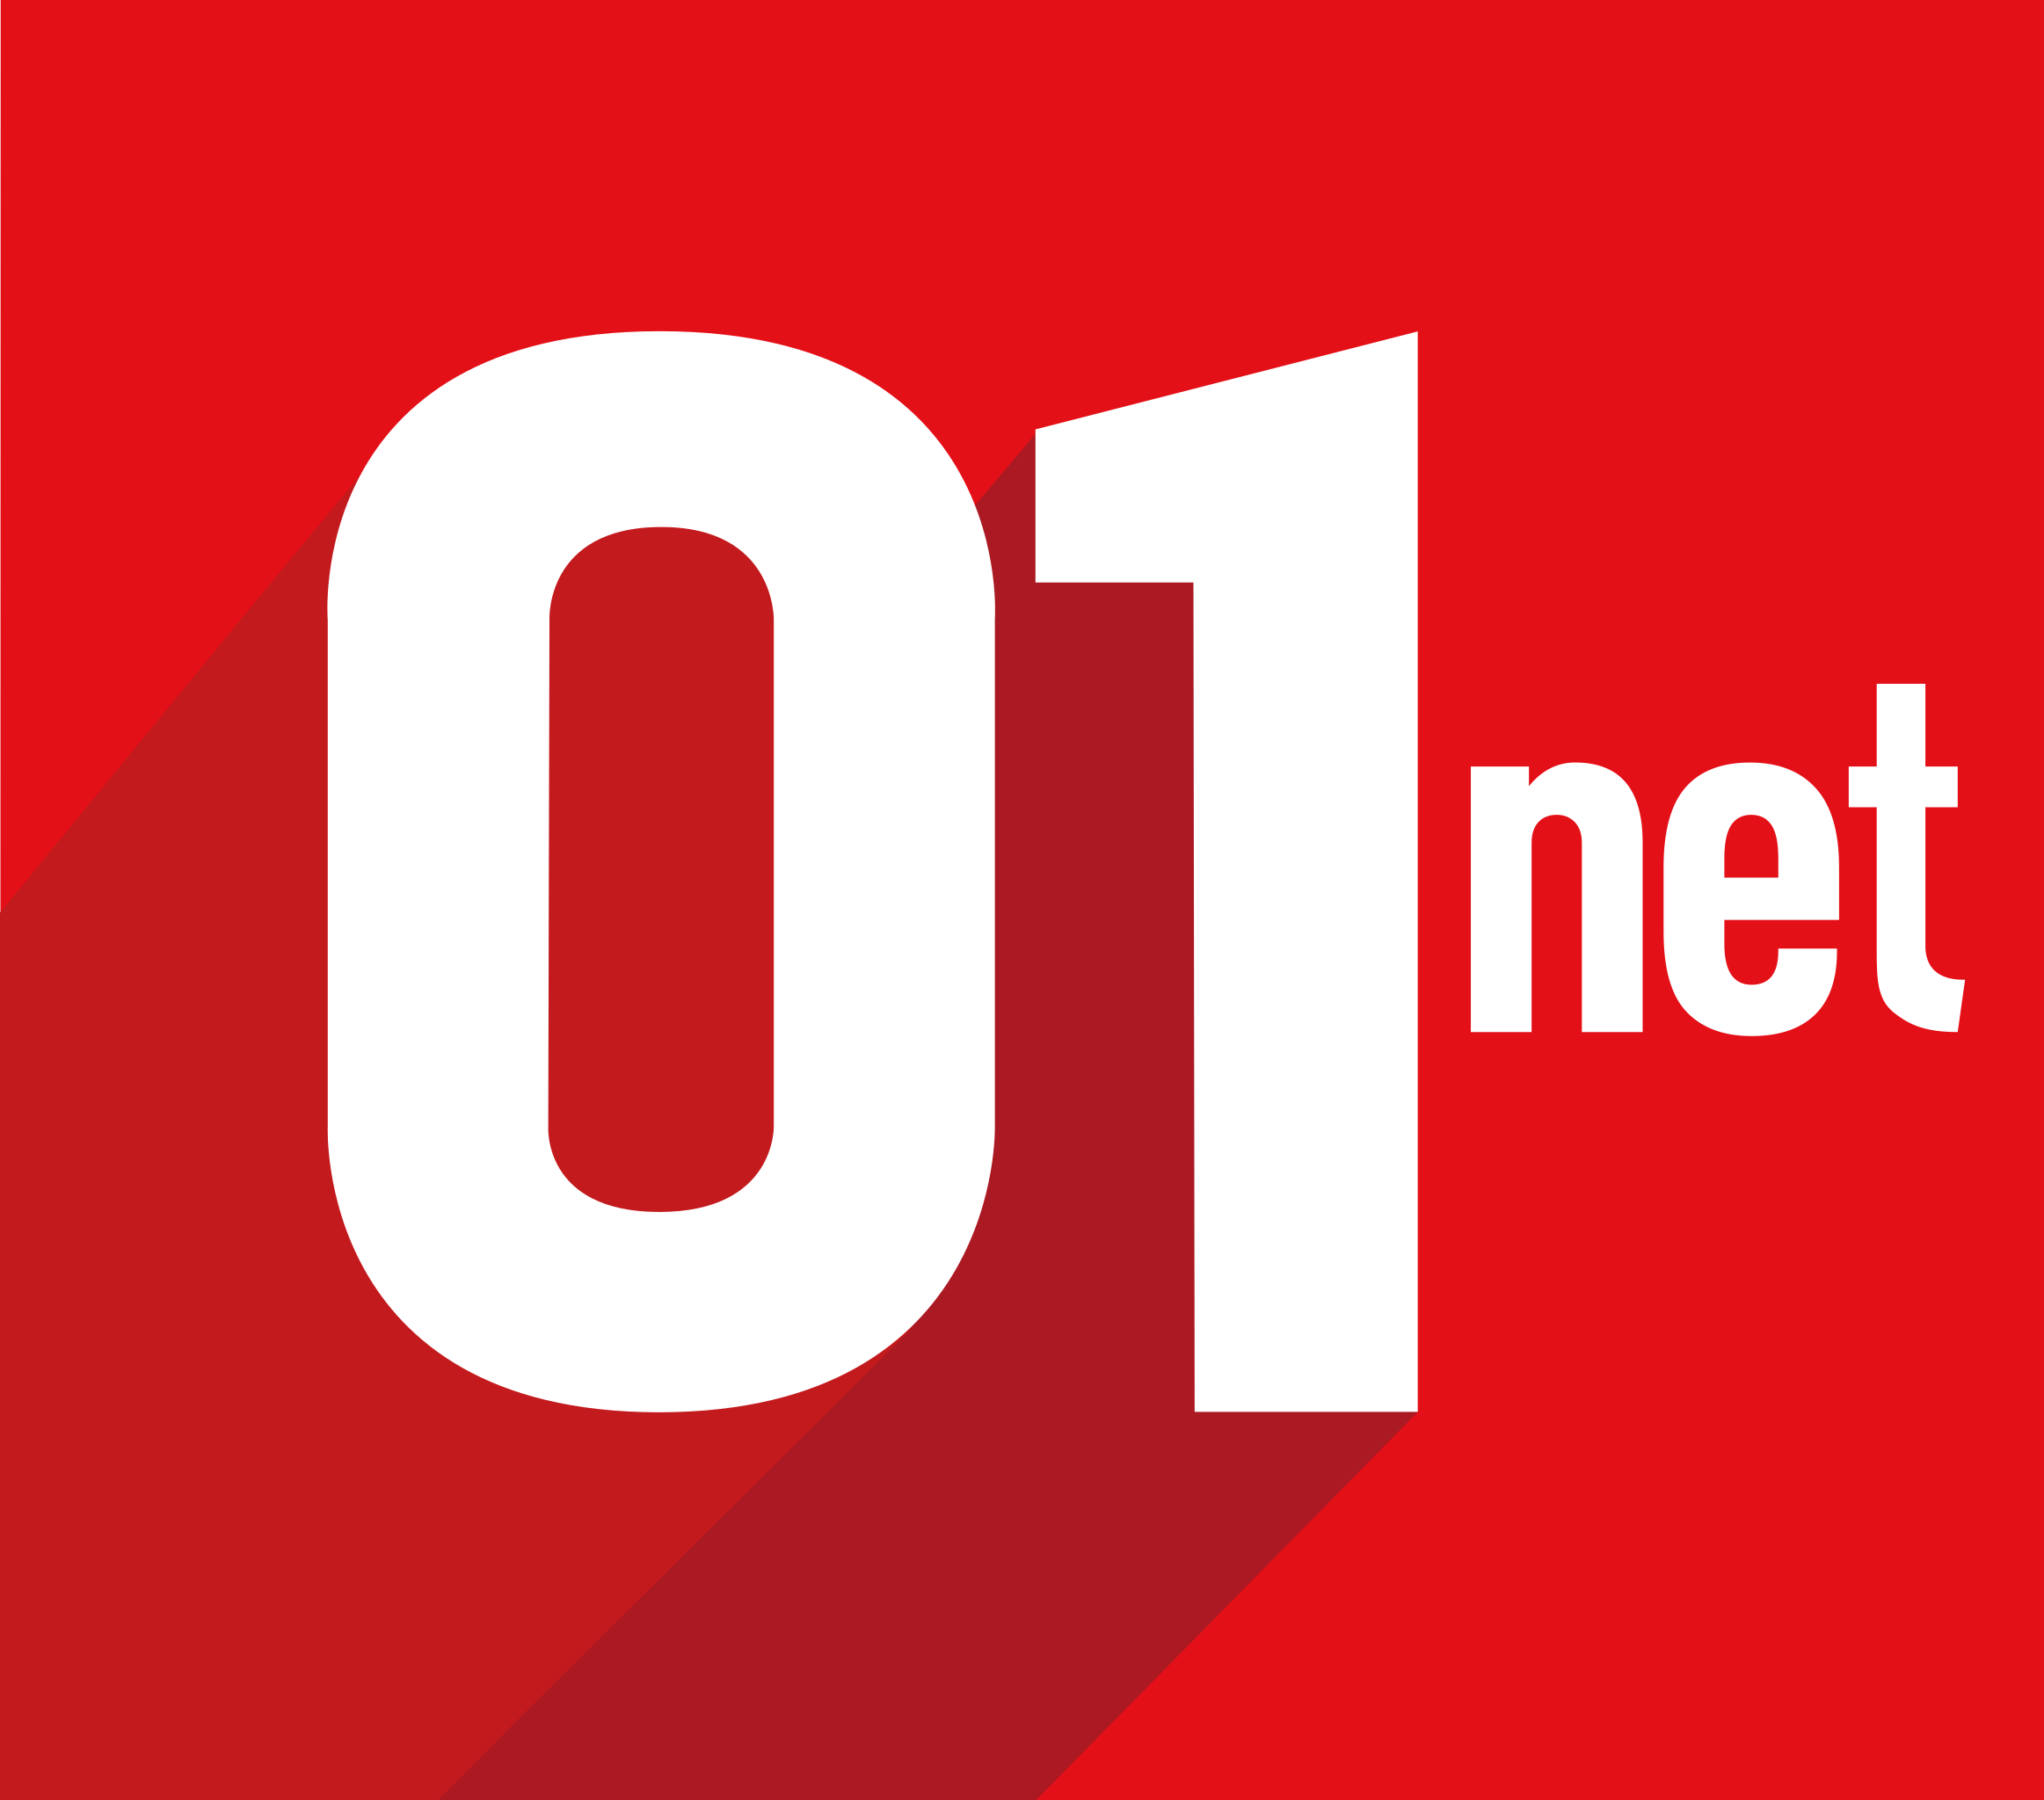 01net logo